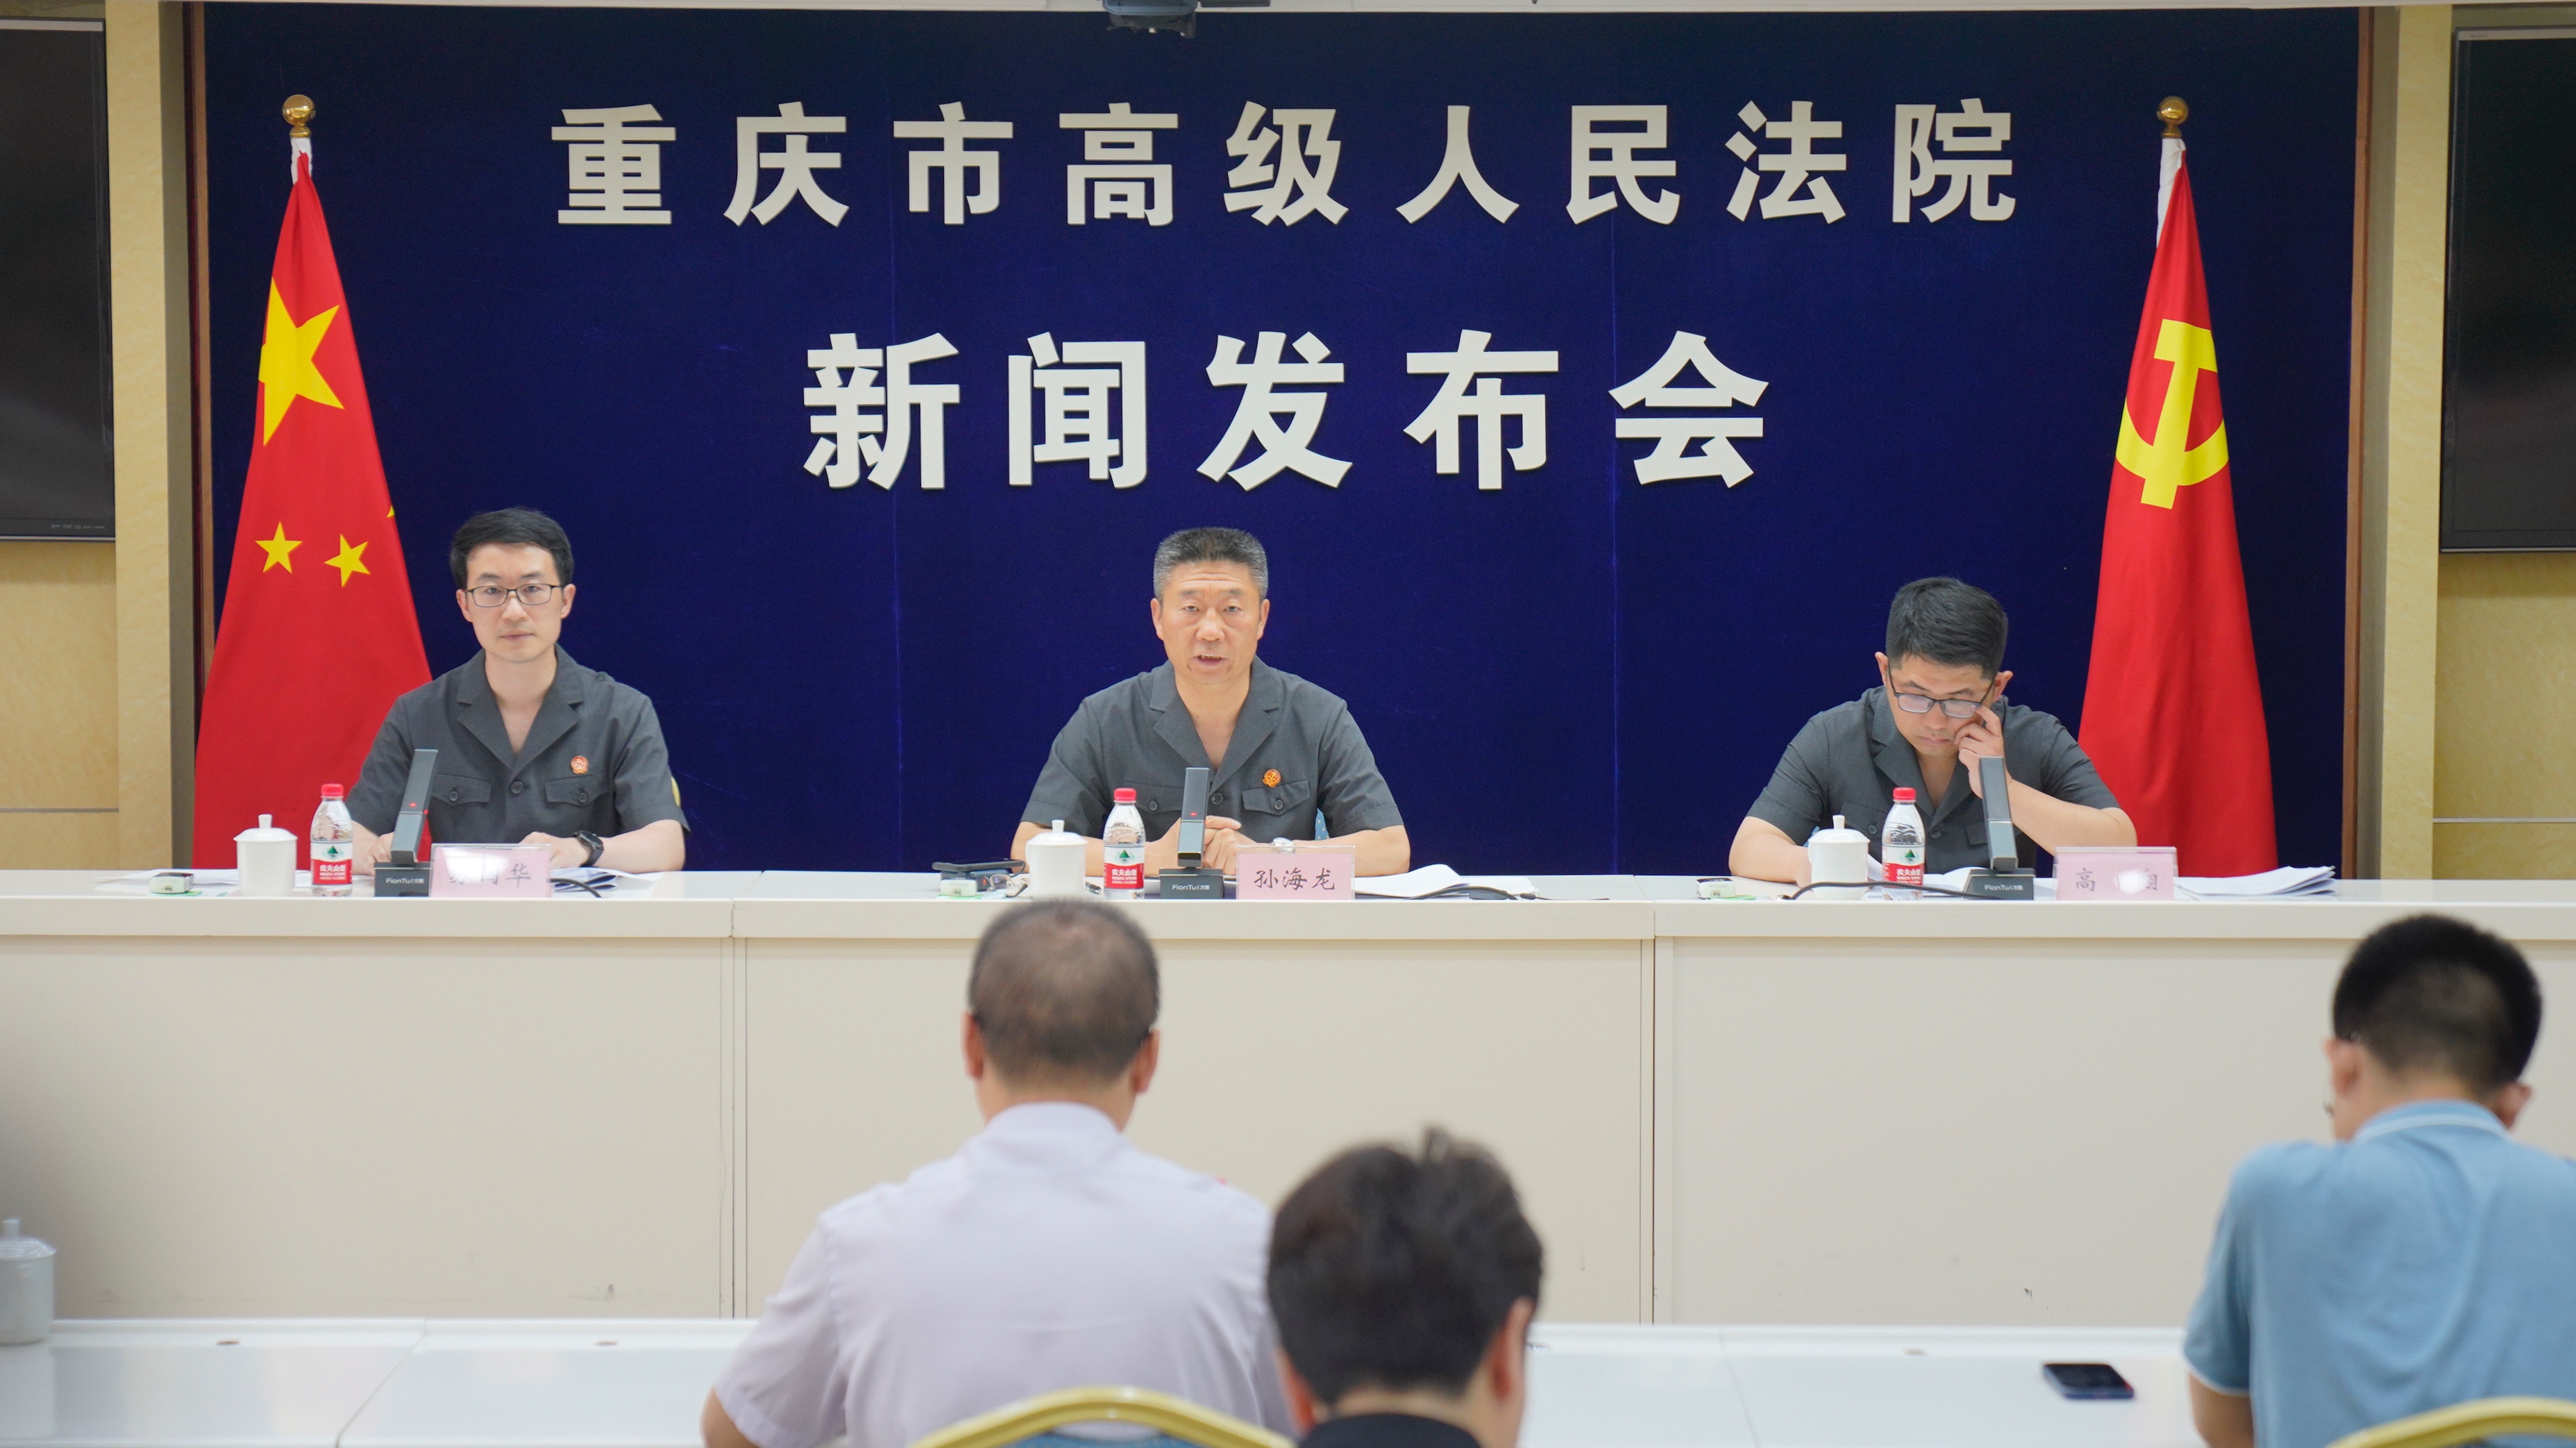 重庆发布未成年人司法保护工作报告 未成年人犯罪案件数量和人数呈“双降”趋势